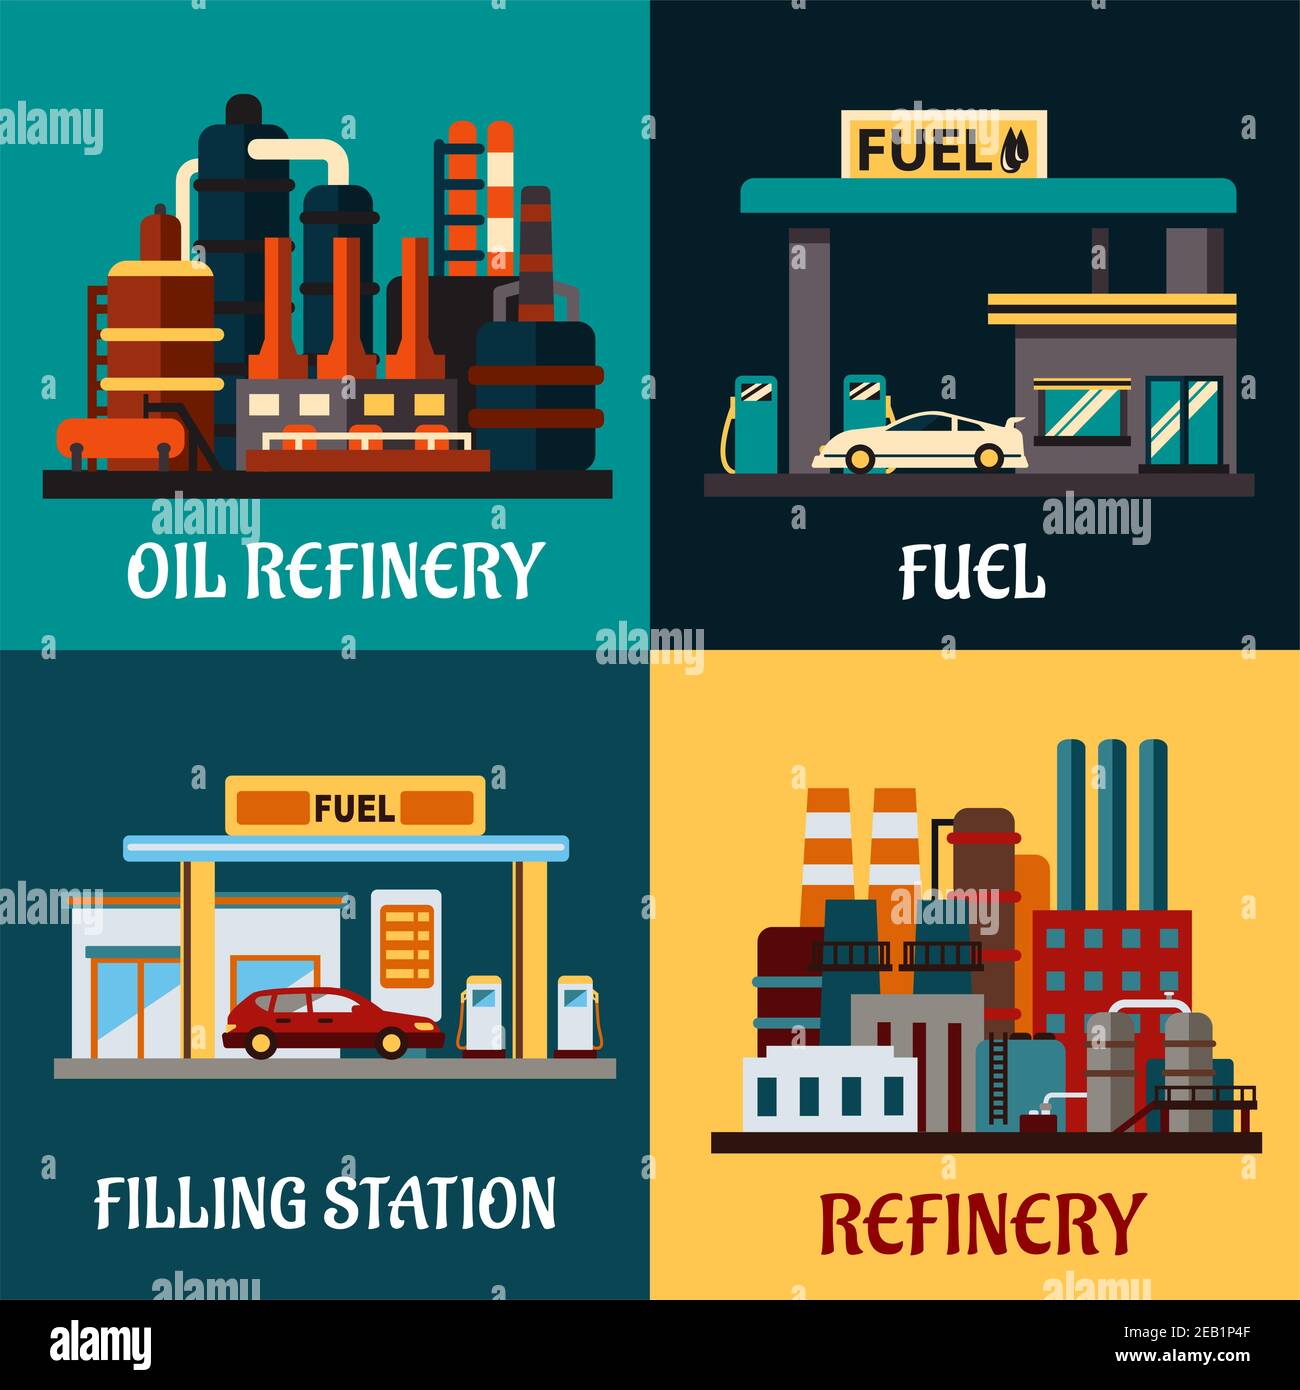 Impianti di raffineria petrolifera e stazioni di gas concetti in stile piano che mostrano stazioni di riempimento su strada con auto, pompe e impianti industriali per la raffinazione o Illustrazione Vettoriale